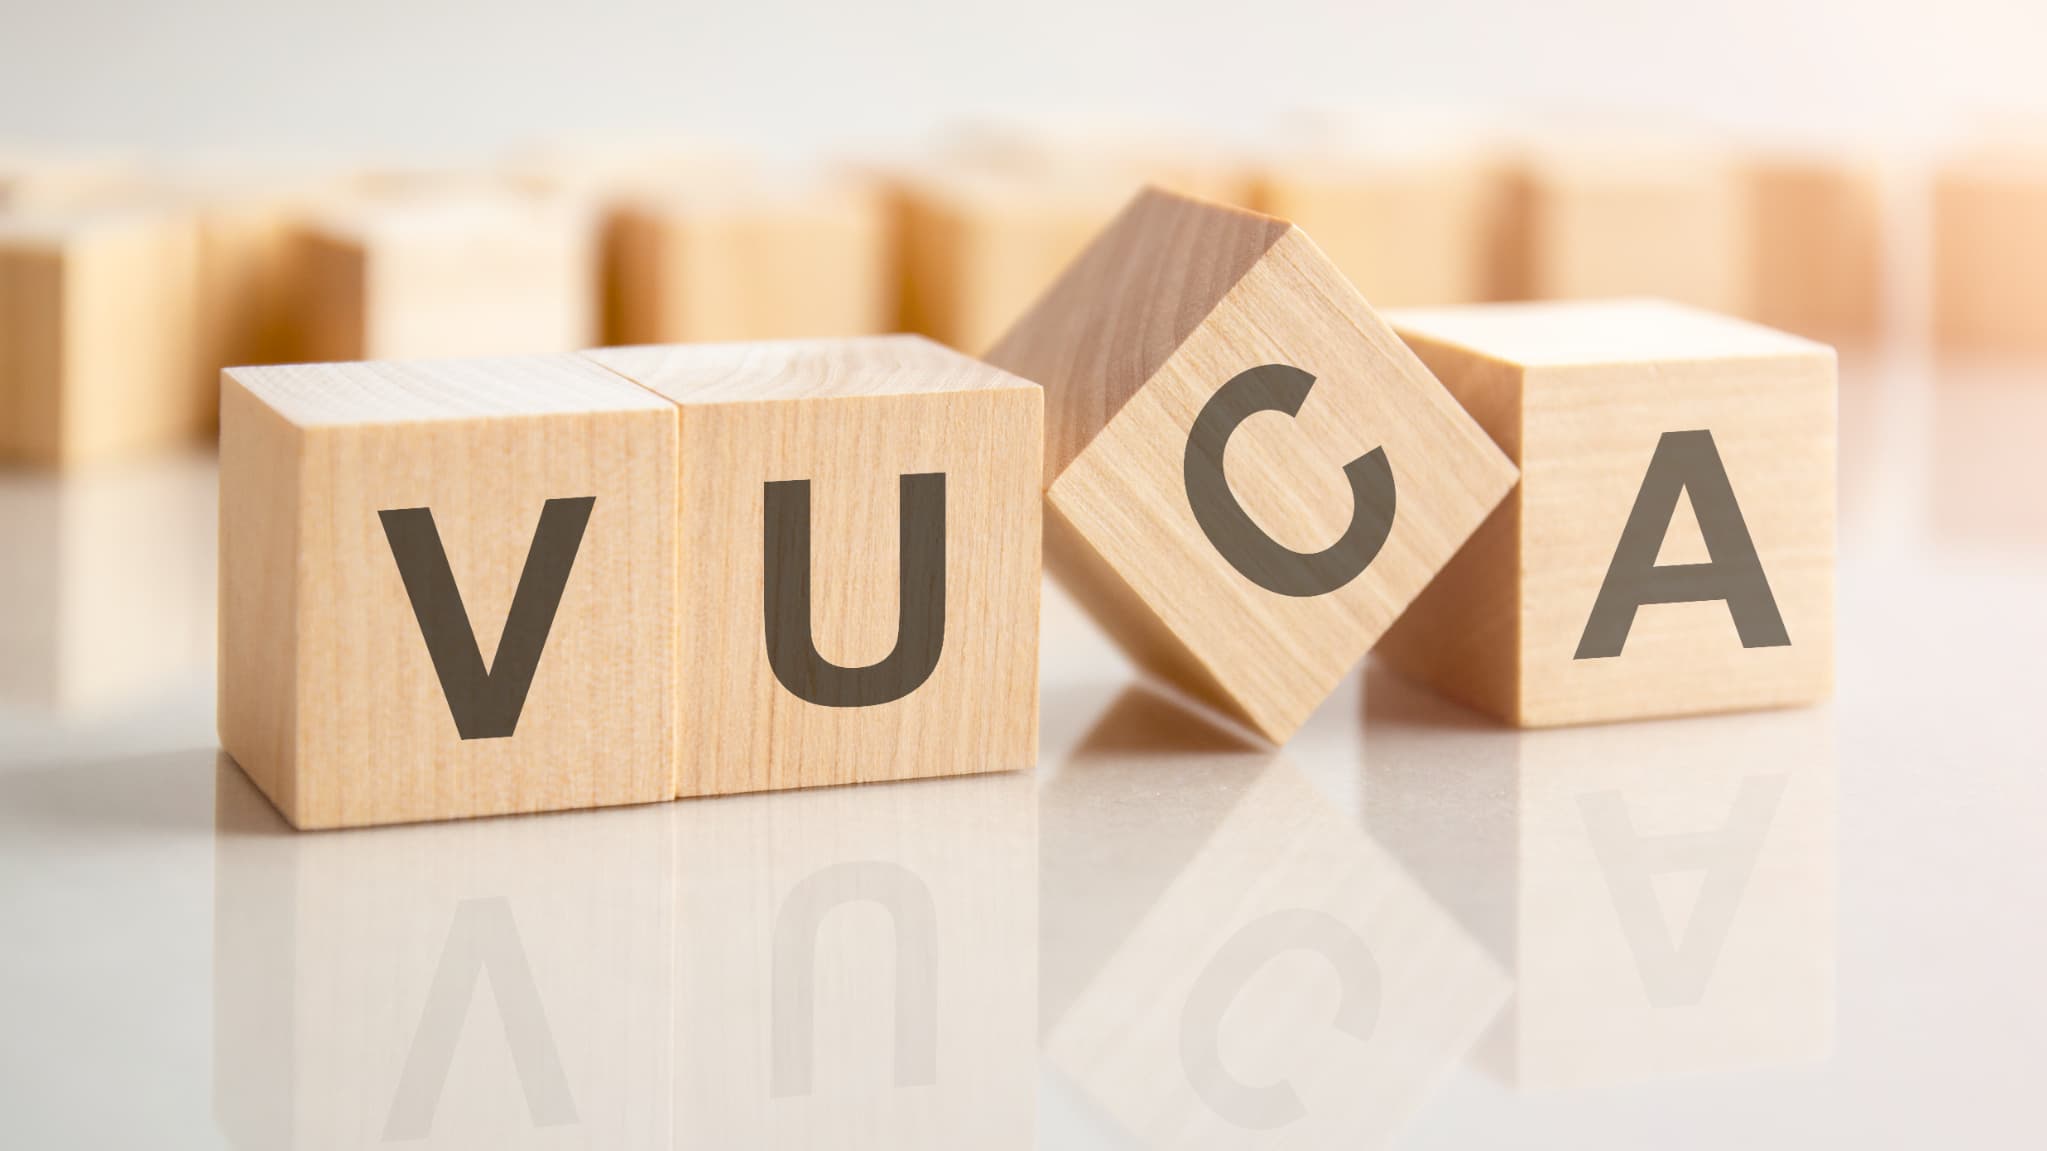 グローバル時代に活きる子を育むおうち英語では、VUCA時代の特徴を見据えながら関わっていこう！